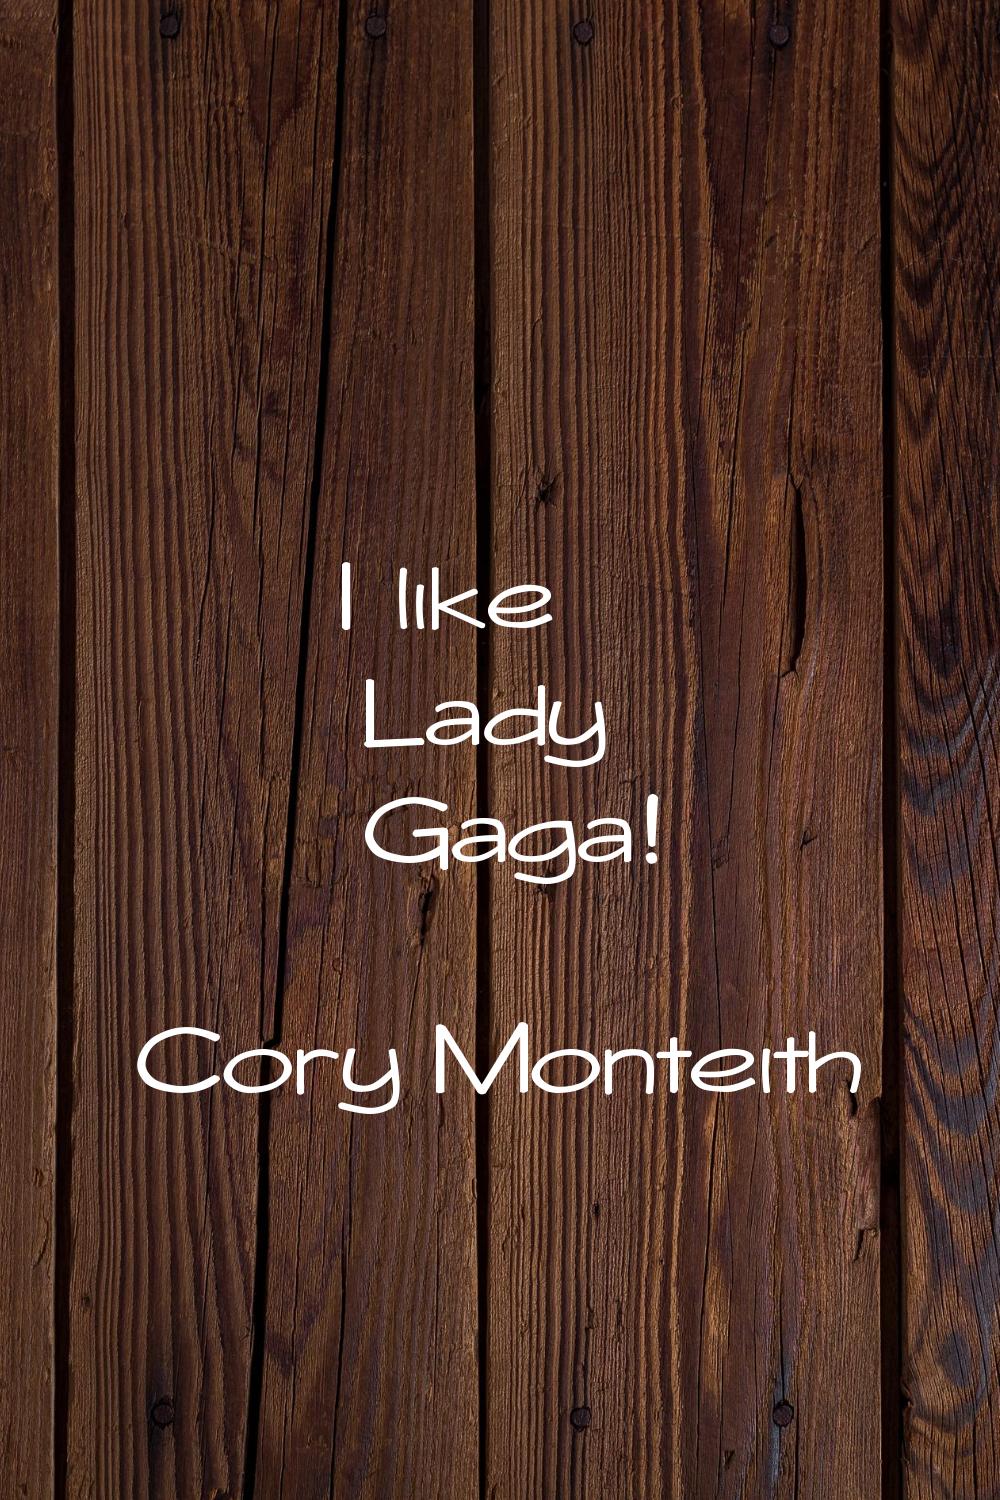 I like Lady Gaga!